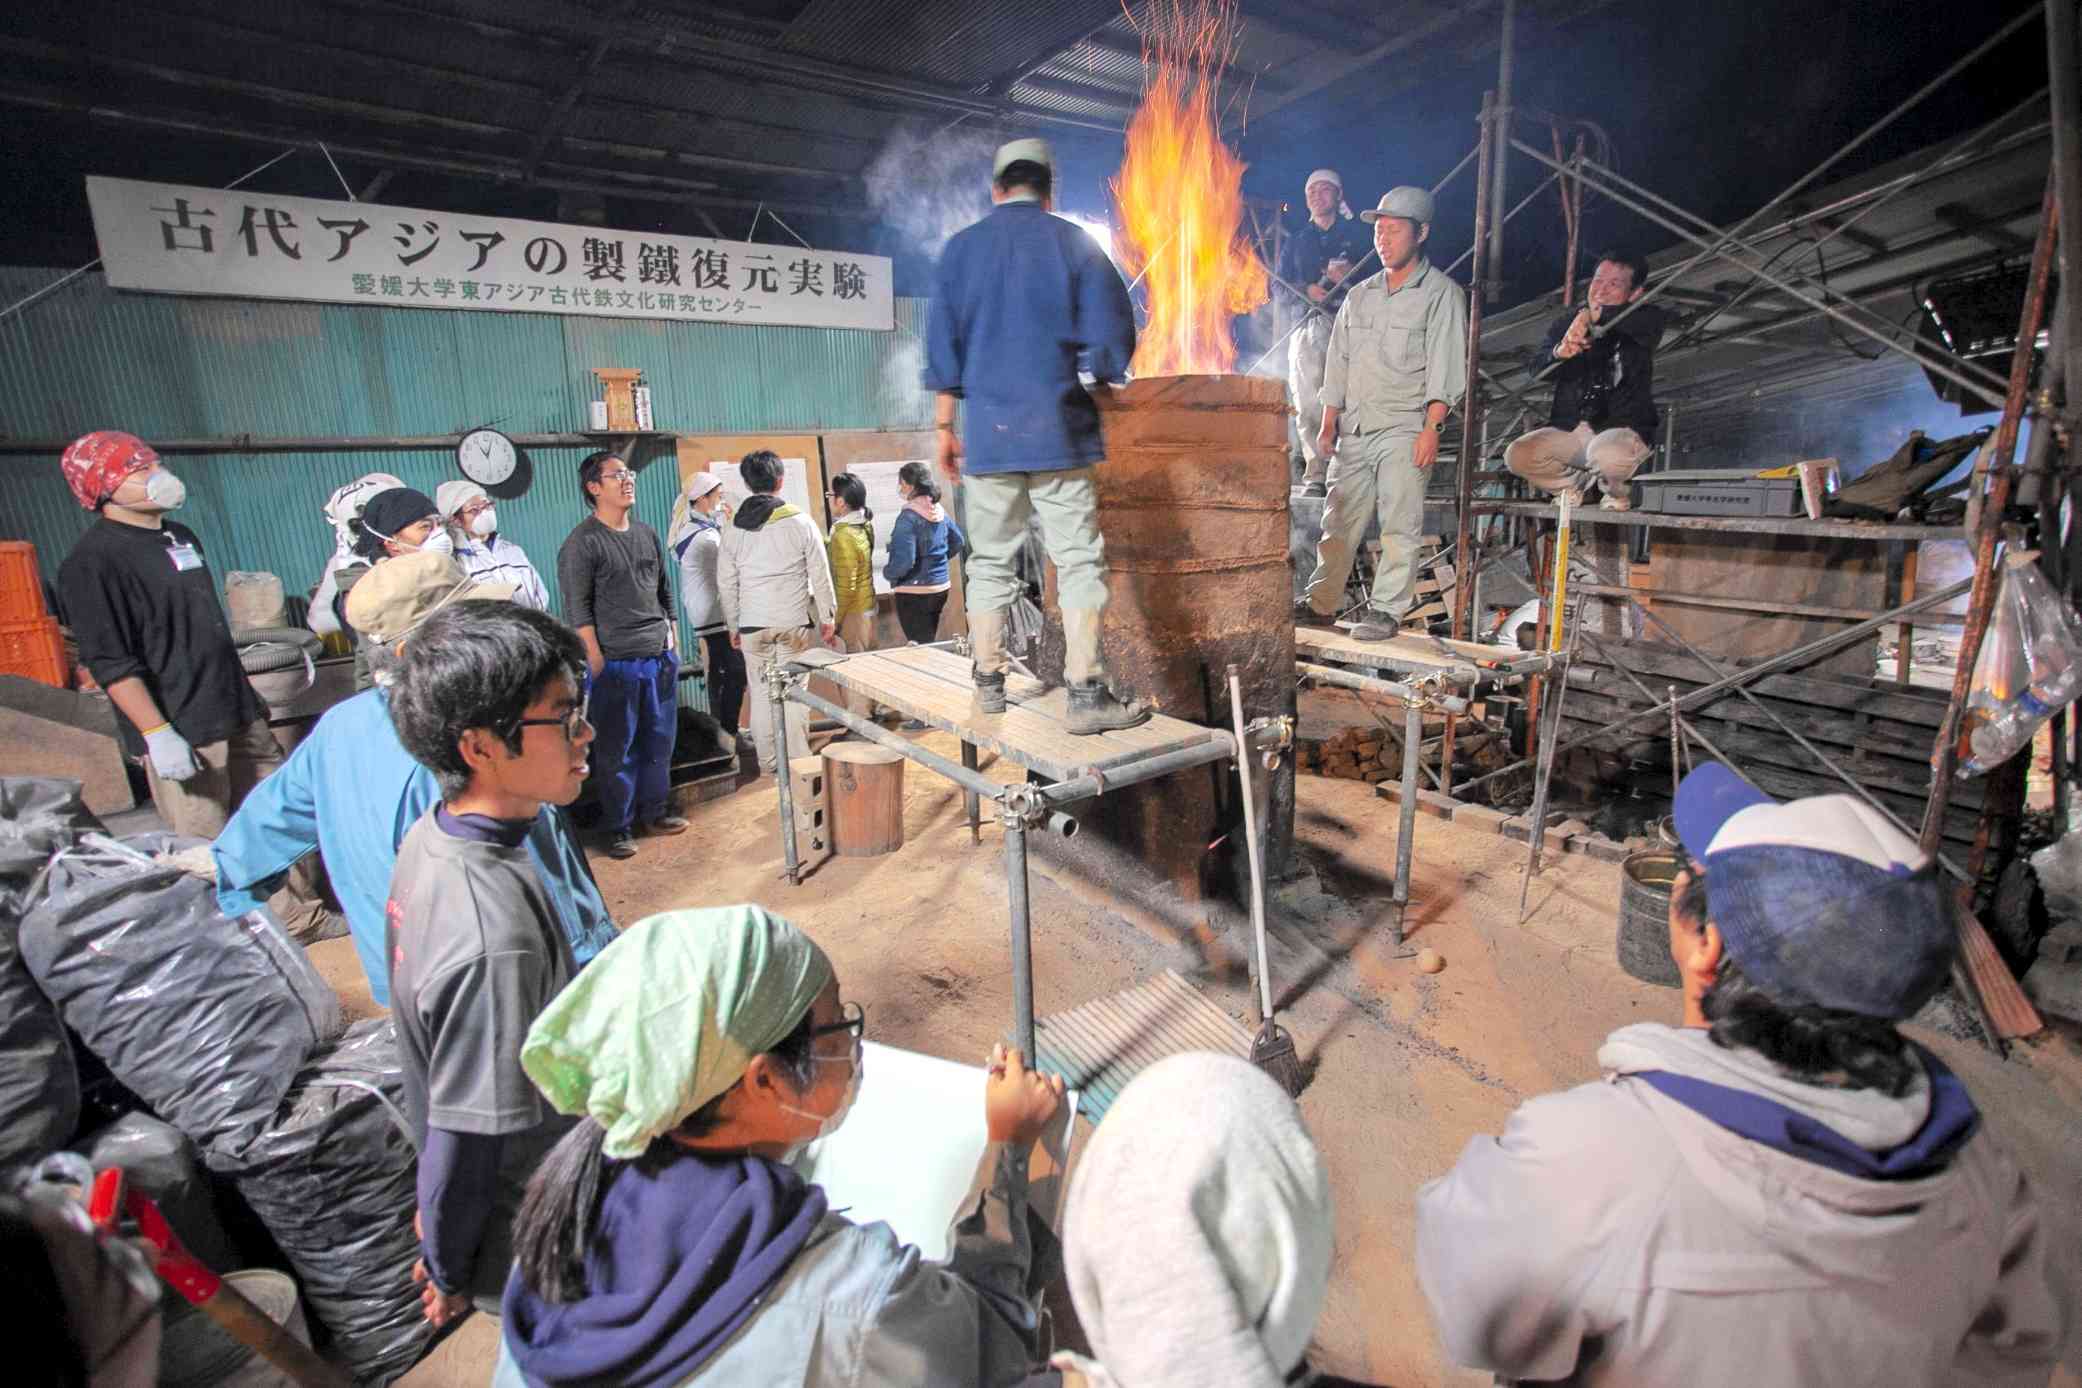 岡山県新見市の中世たたら実験場で愛媛大が行った製鉄復元実験